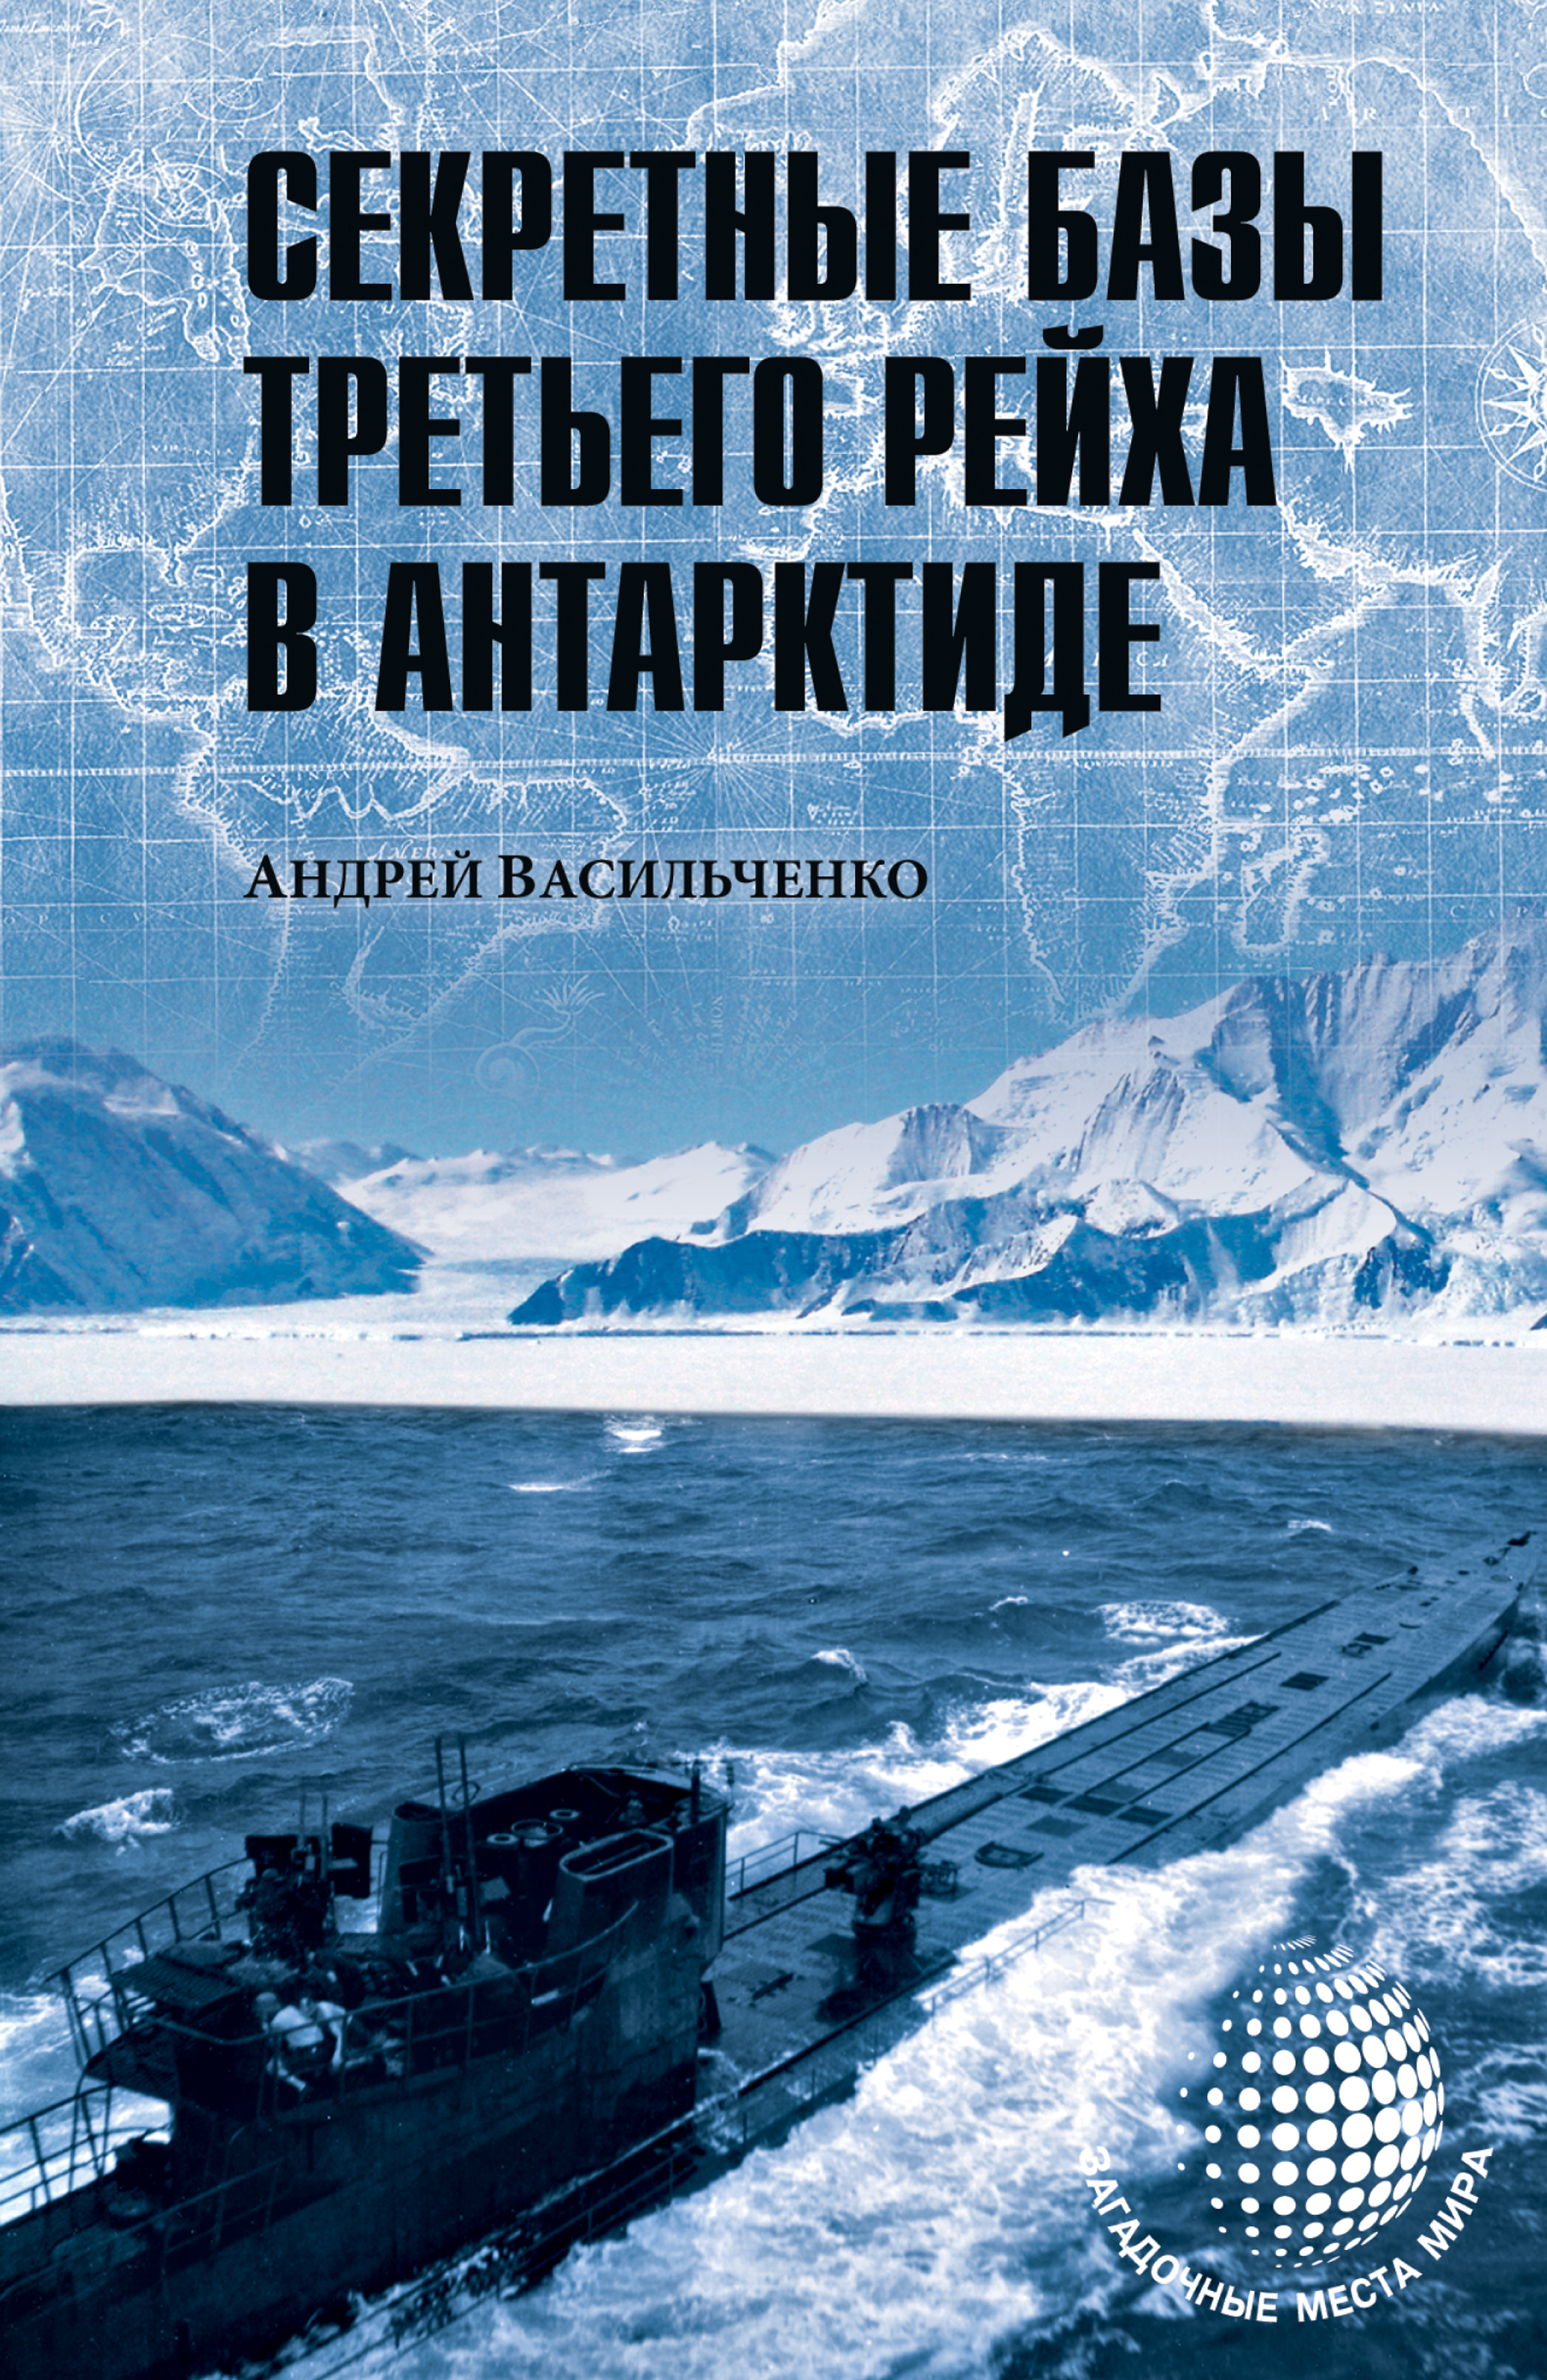 Книга Секретные базы III рейха в Антарктиде (сборник) из серии , созданная Андрей Васильченко, написана в жанре Документальная литература. Стоимость электронной книги Секретные базы III рейха в Антарктиде (сборник) с идентификатором 32842399 составляет 149.00 руб.